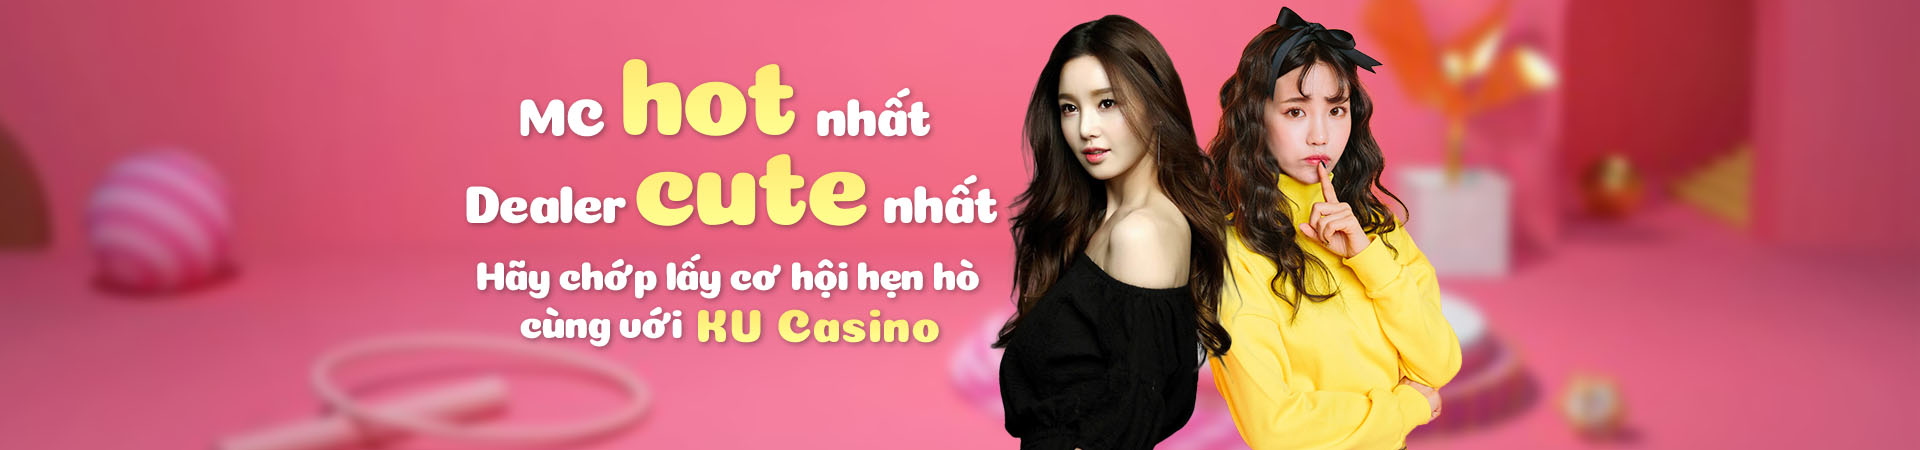 Những lời khuyên tốt nhất cho người mới bắt đầu chơi casino - Thien Ha Bet